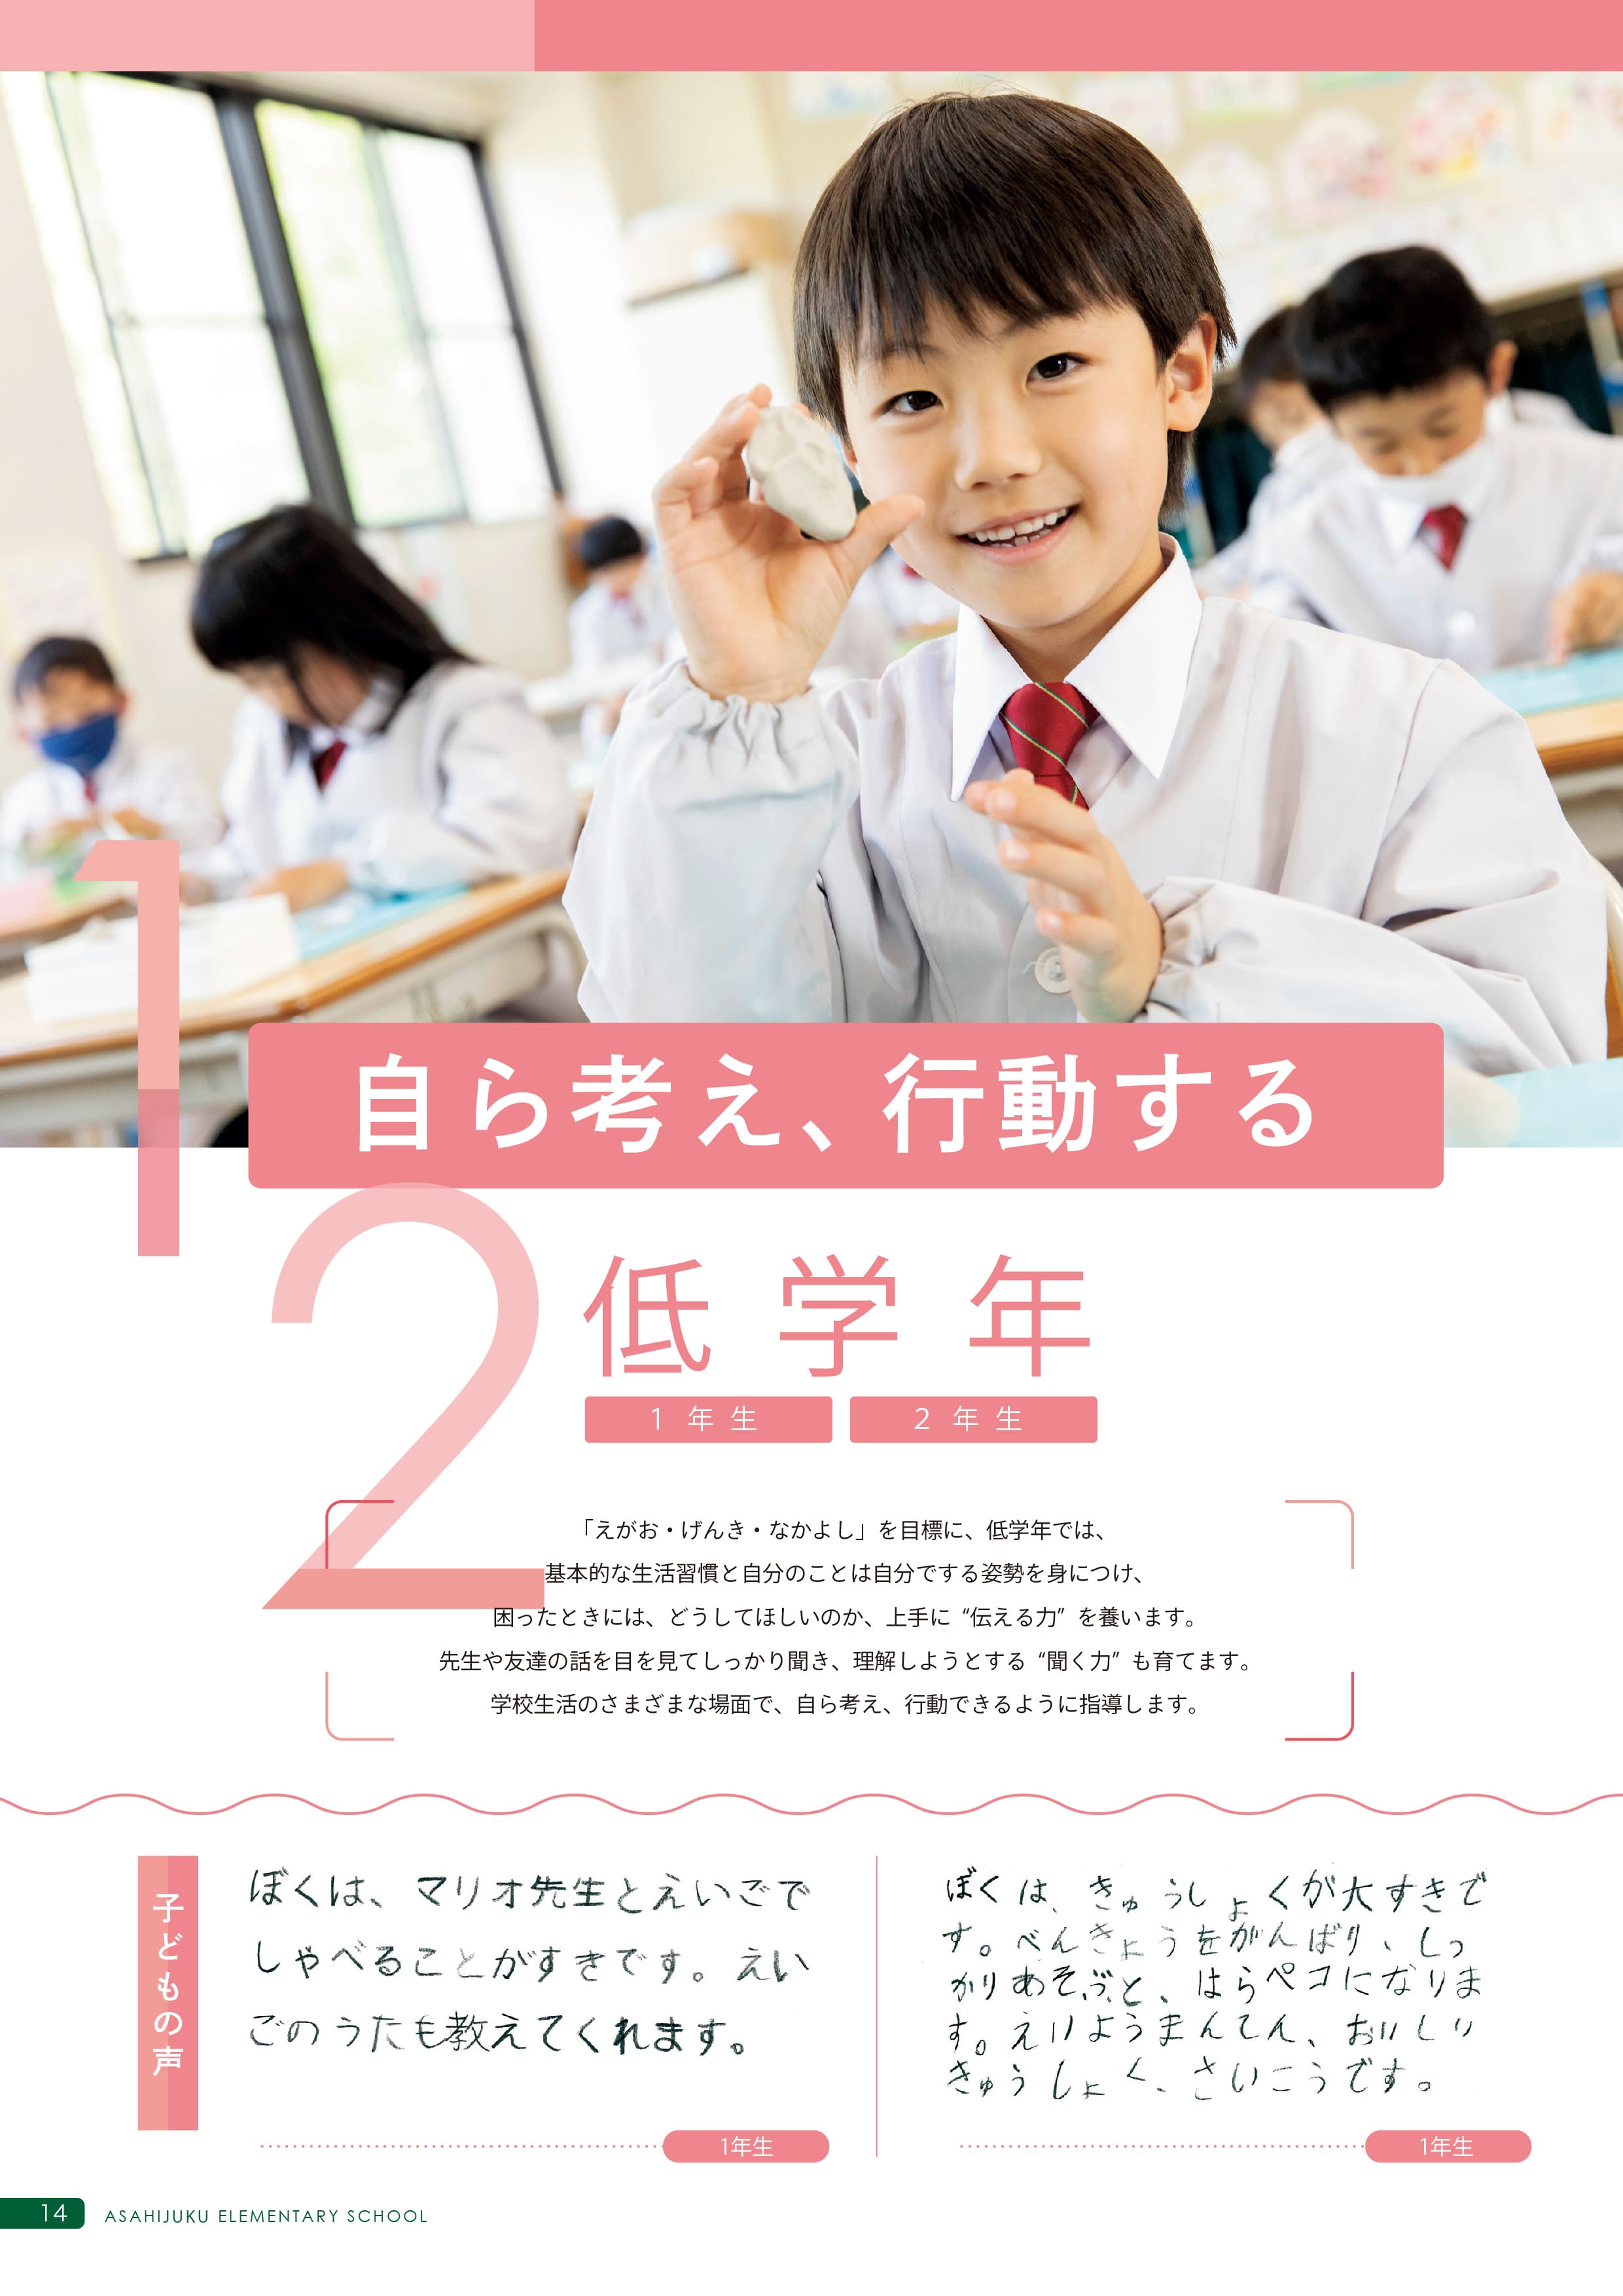 p14-p15 朝日塾小学校の学び〔低学年〕